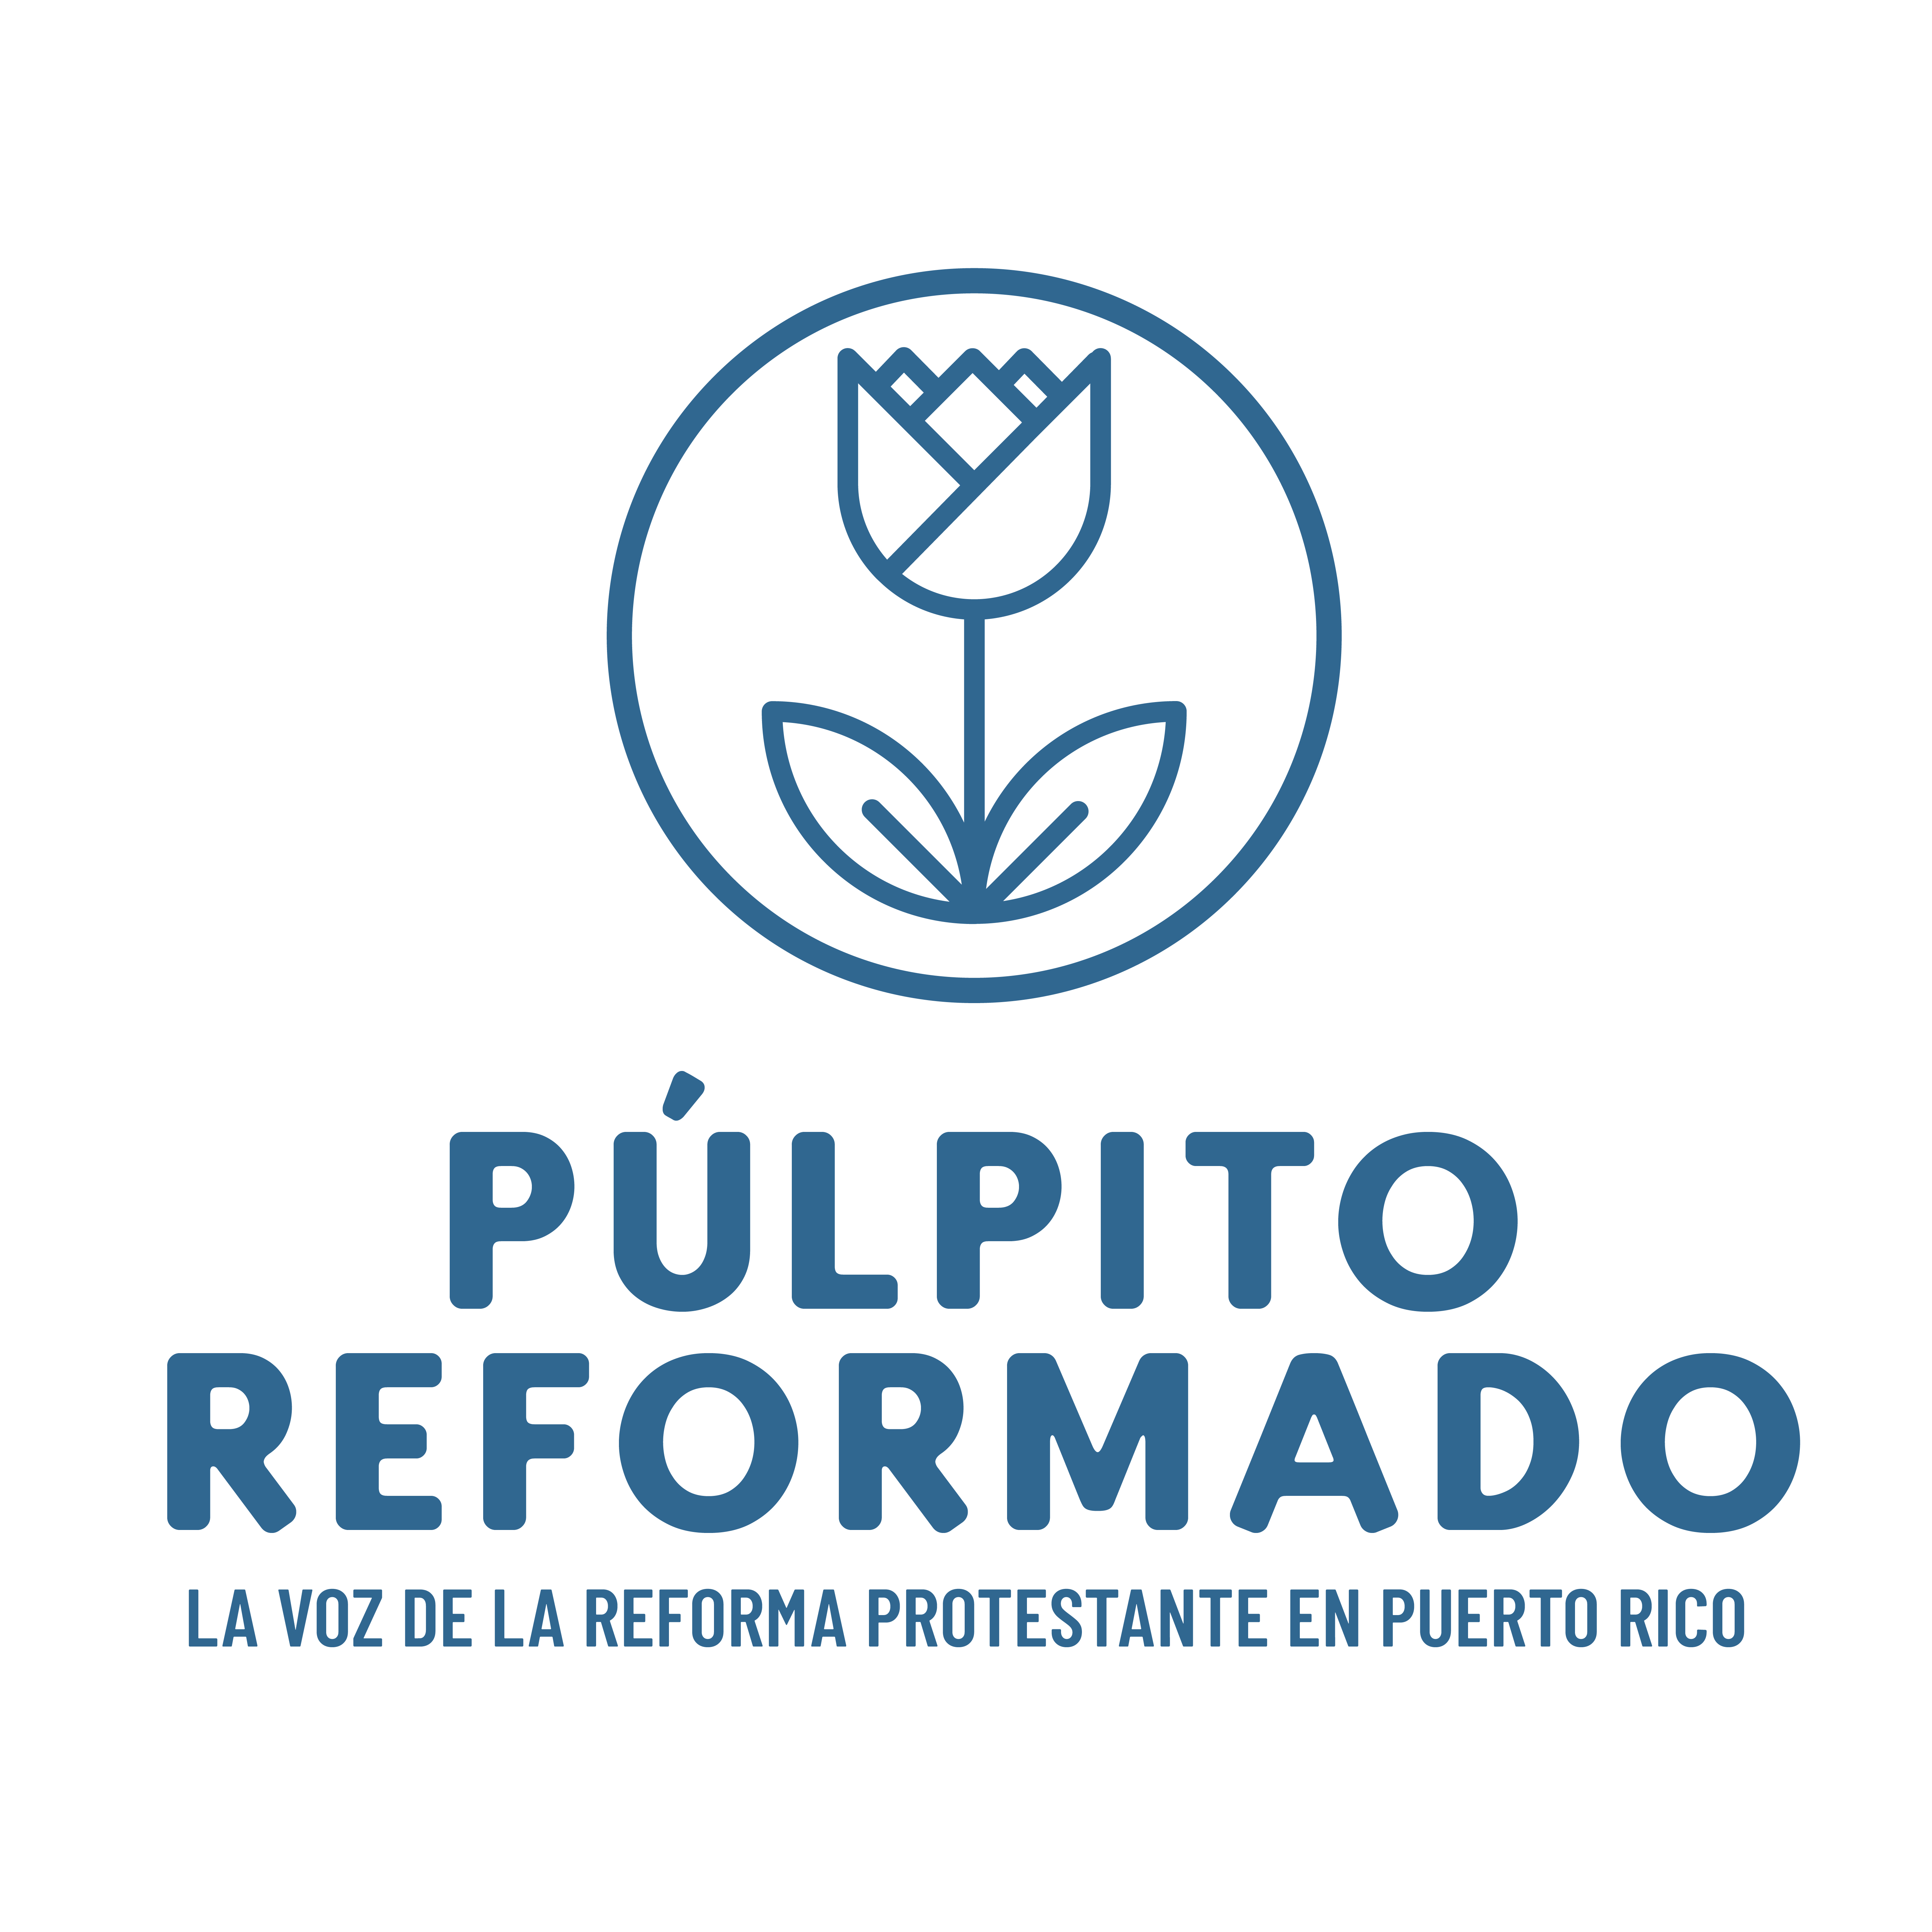 Pulpito Reformado - Promo sq-03 image